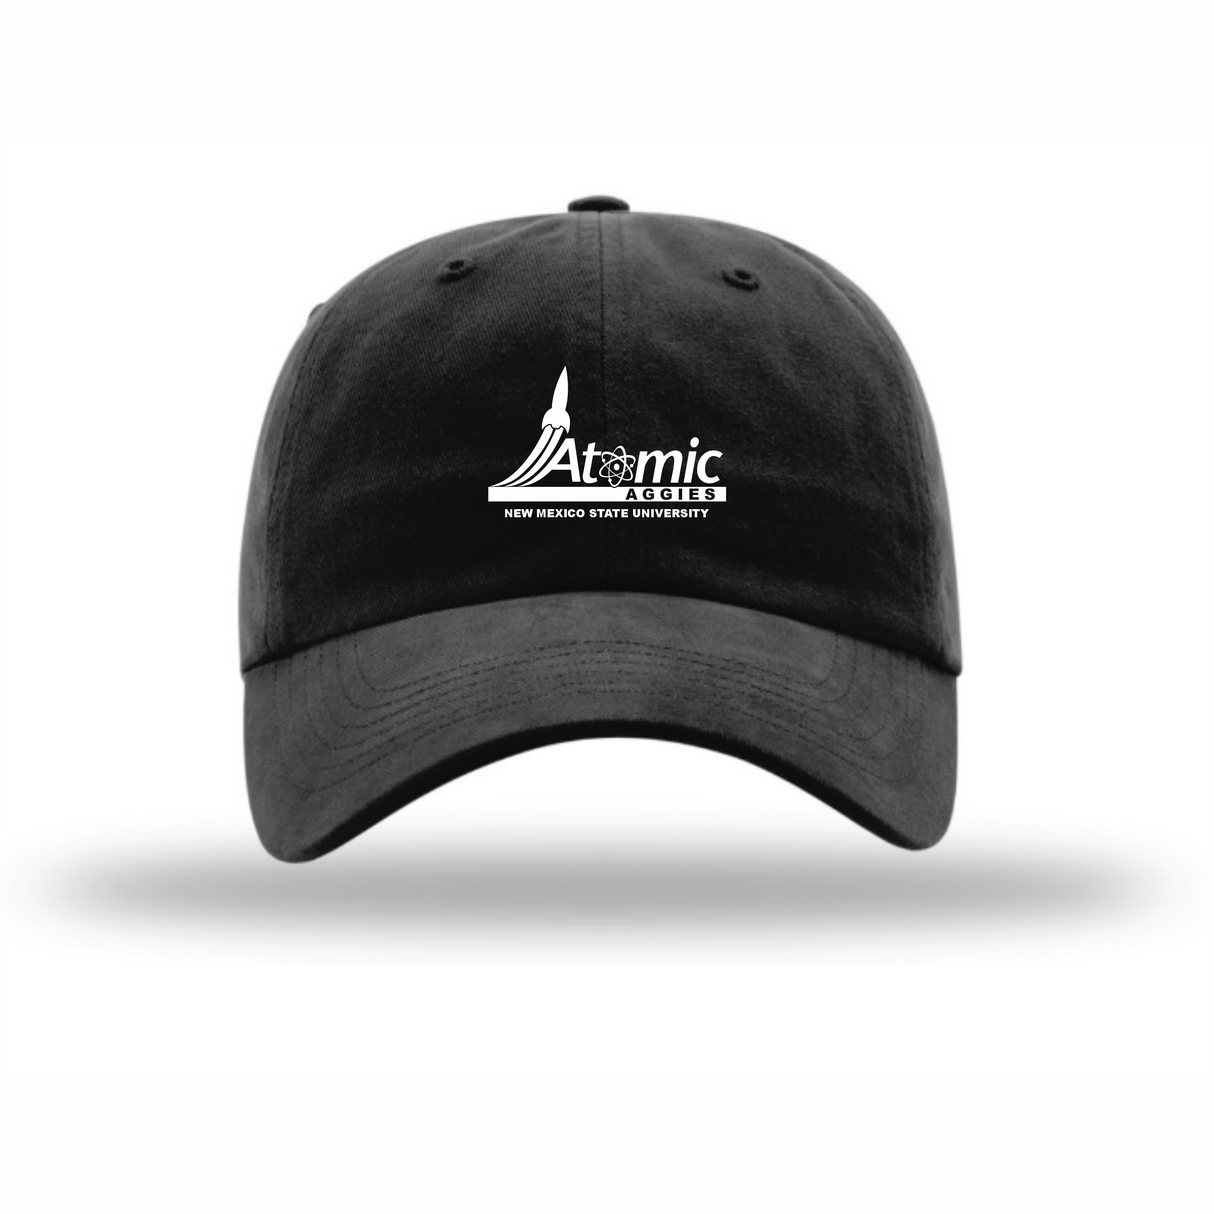 Atomic Aggies Unstructured Cap